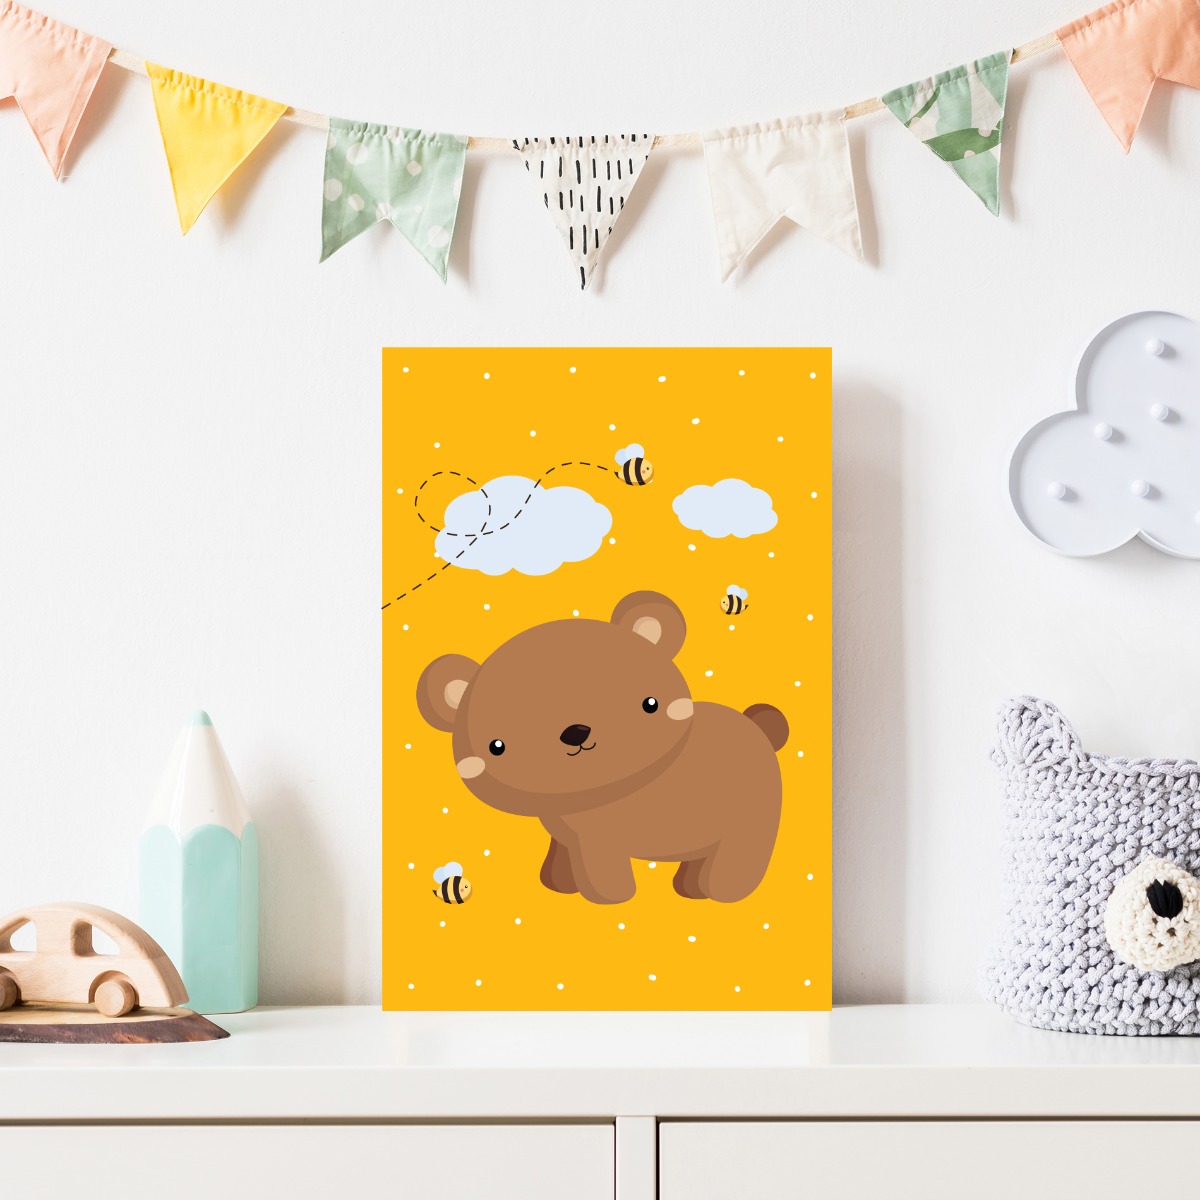 Placa Decorativa Infantil Urso e Abelhas 20x30cm